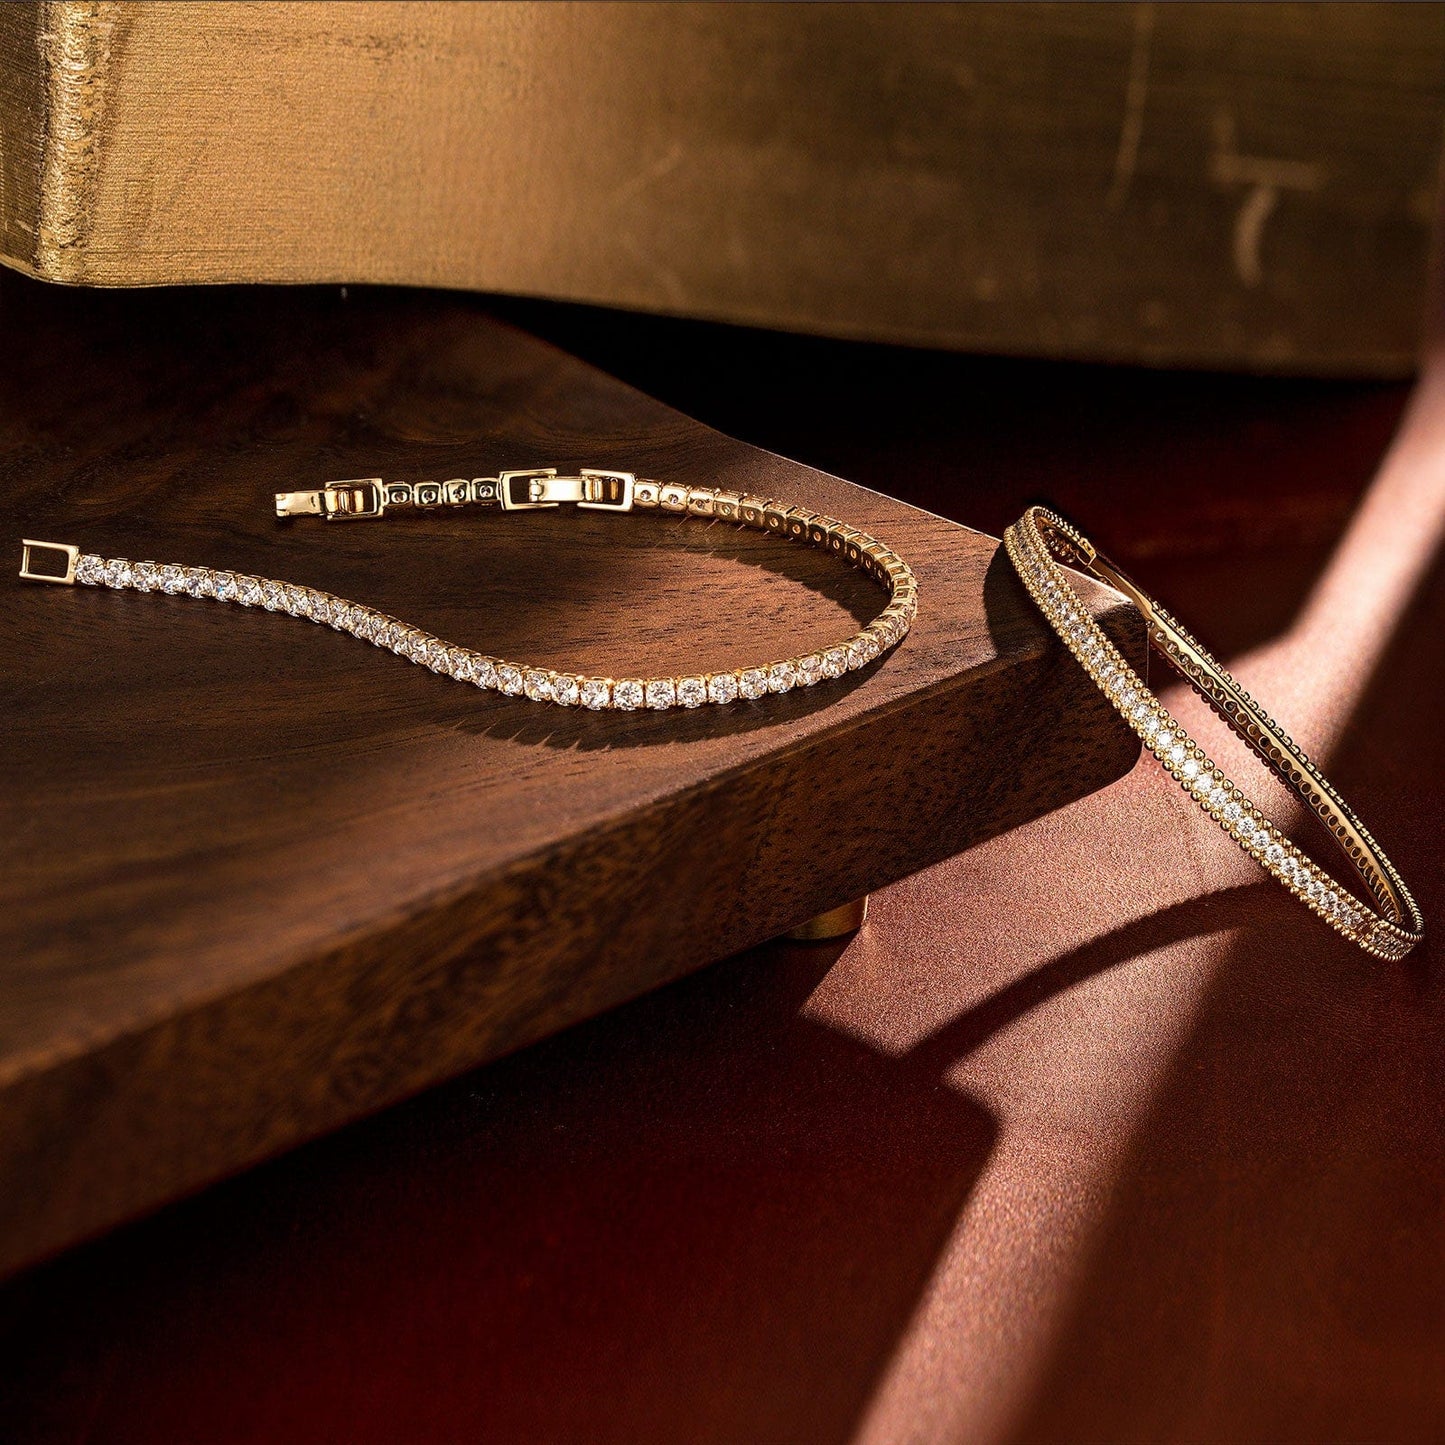 Sterling Silver Layered Bracelets Set: Tennis Bracelet and Bangle Bracelet Set In 14K Gold Plated